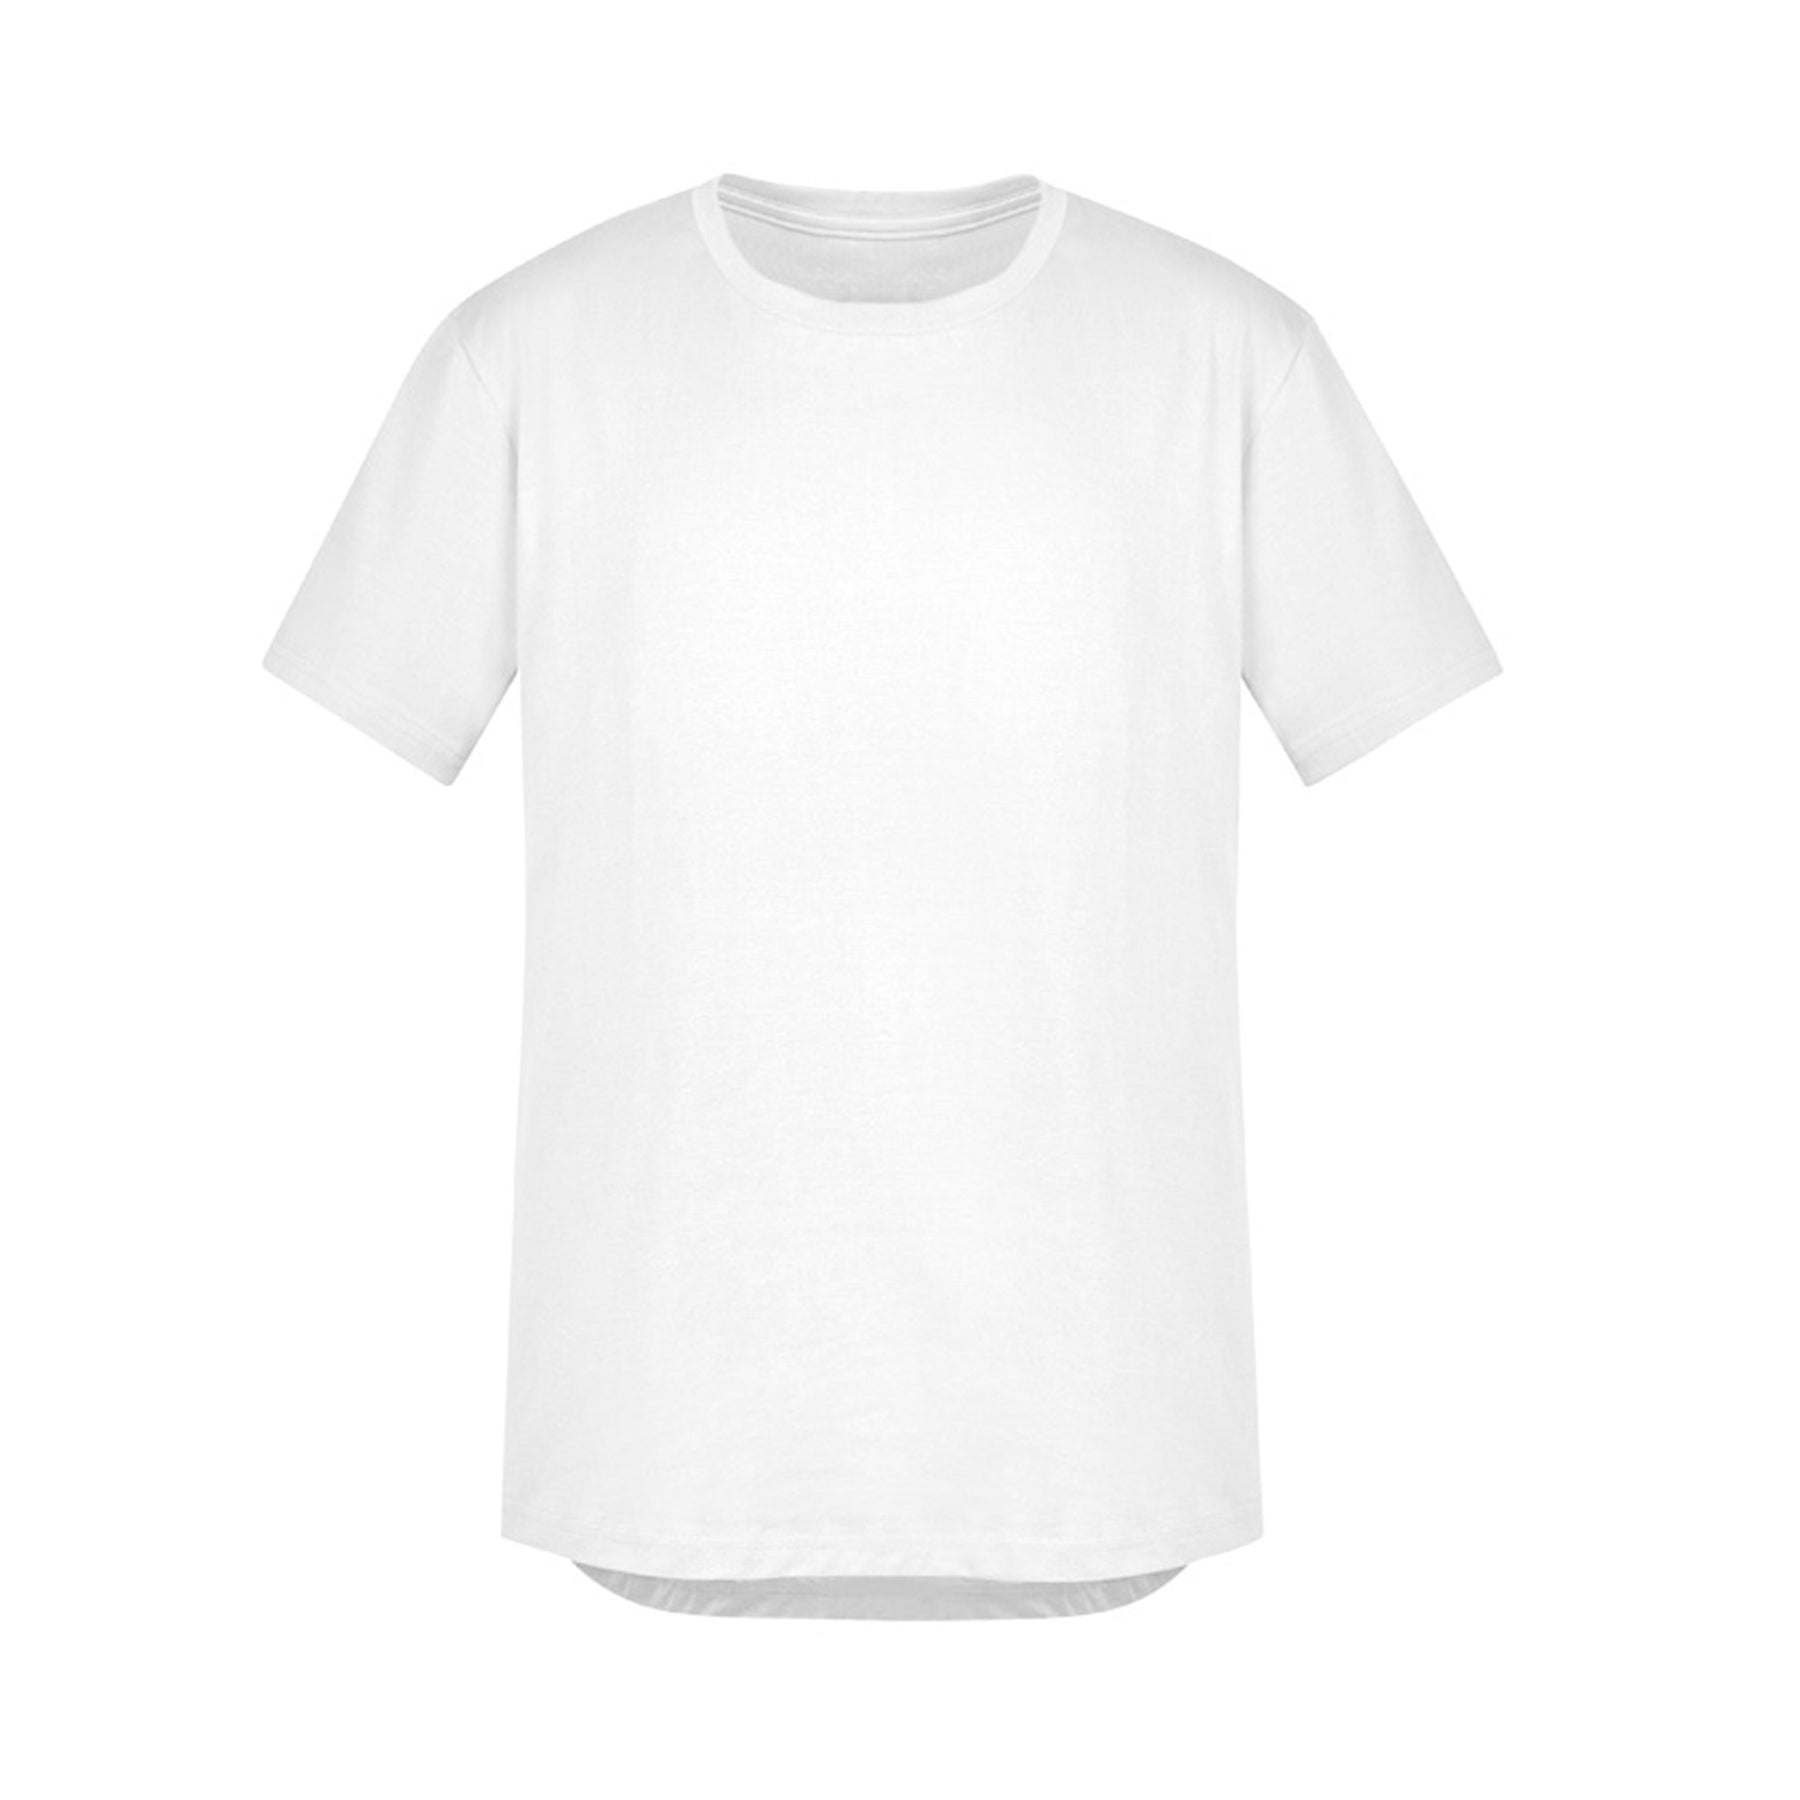 syzmik streetworx tee shirt in white